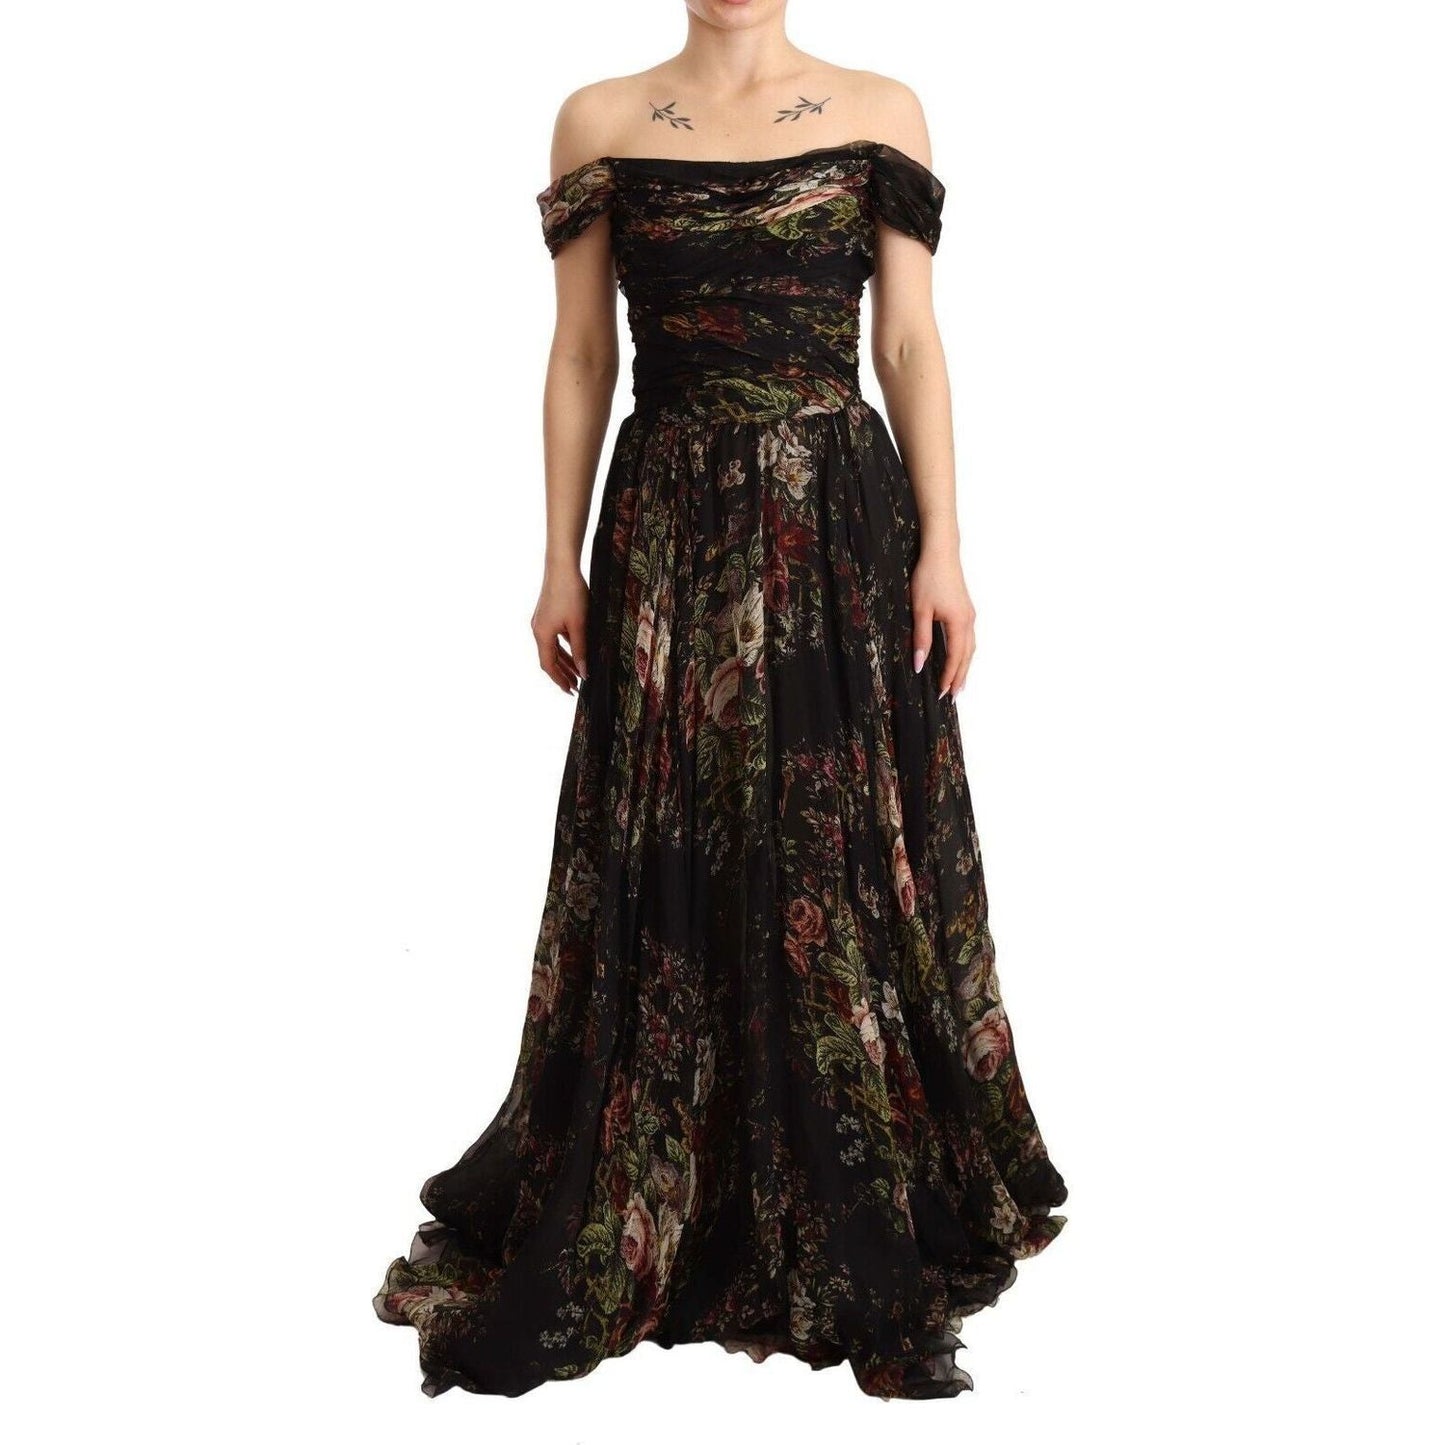 Dolce & Gabbana Floral Silk Off-Shoulder Long Dress multicolored-floral-off-shoulder-gown-dress s-l1600-1-56-e24dbde2-ff1.jpg